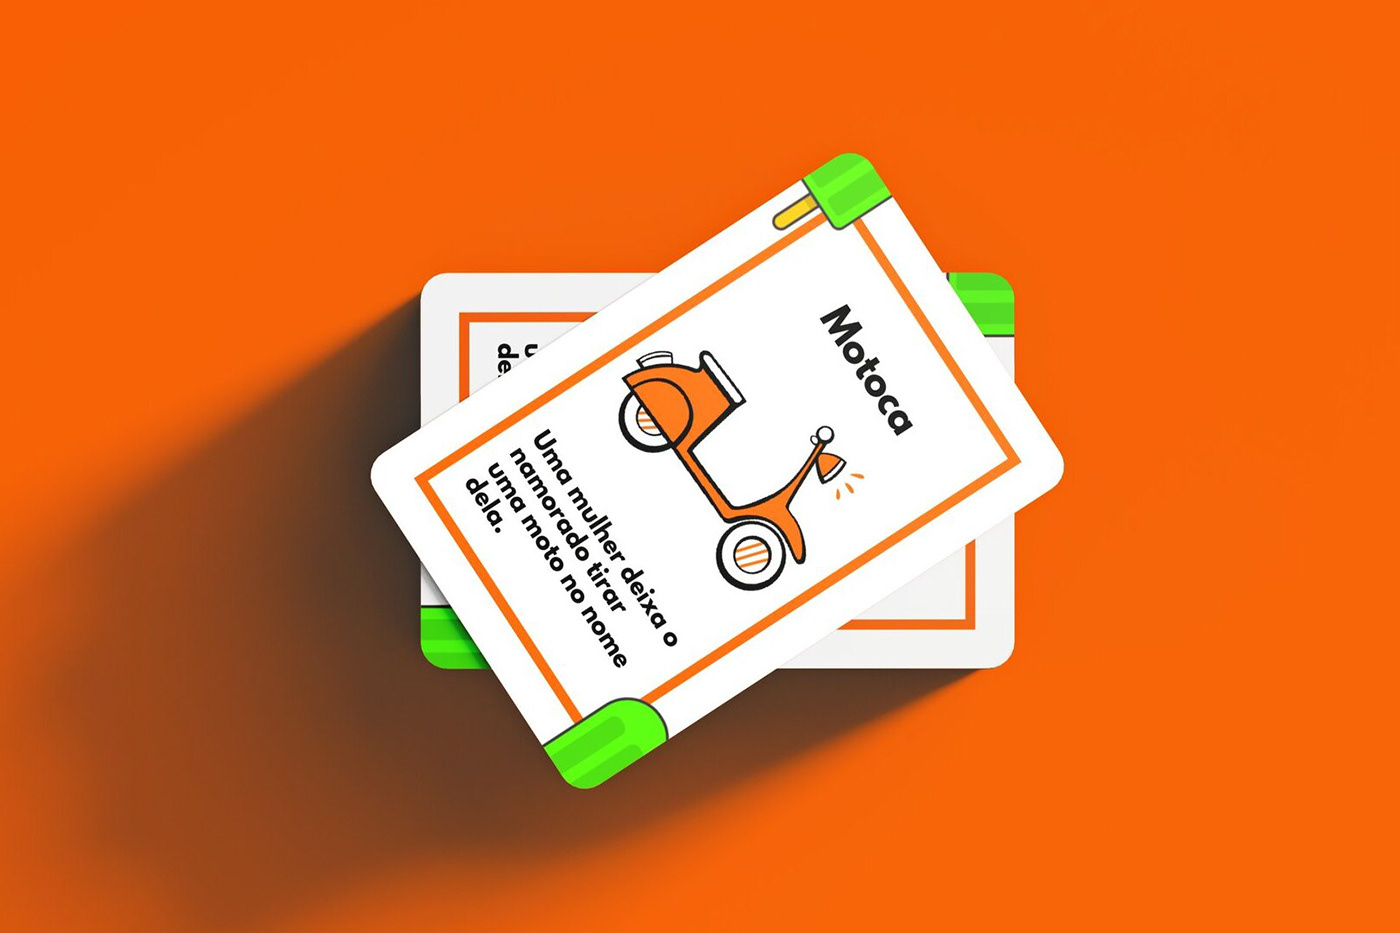 Baralho cartas designdeproduto  designgrafico embalagem jogo orange Packaging packaging design picolé